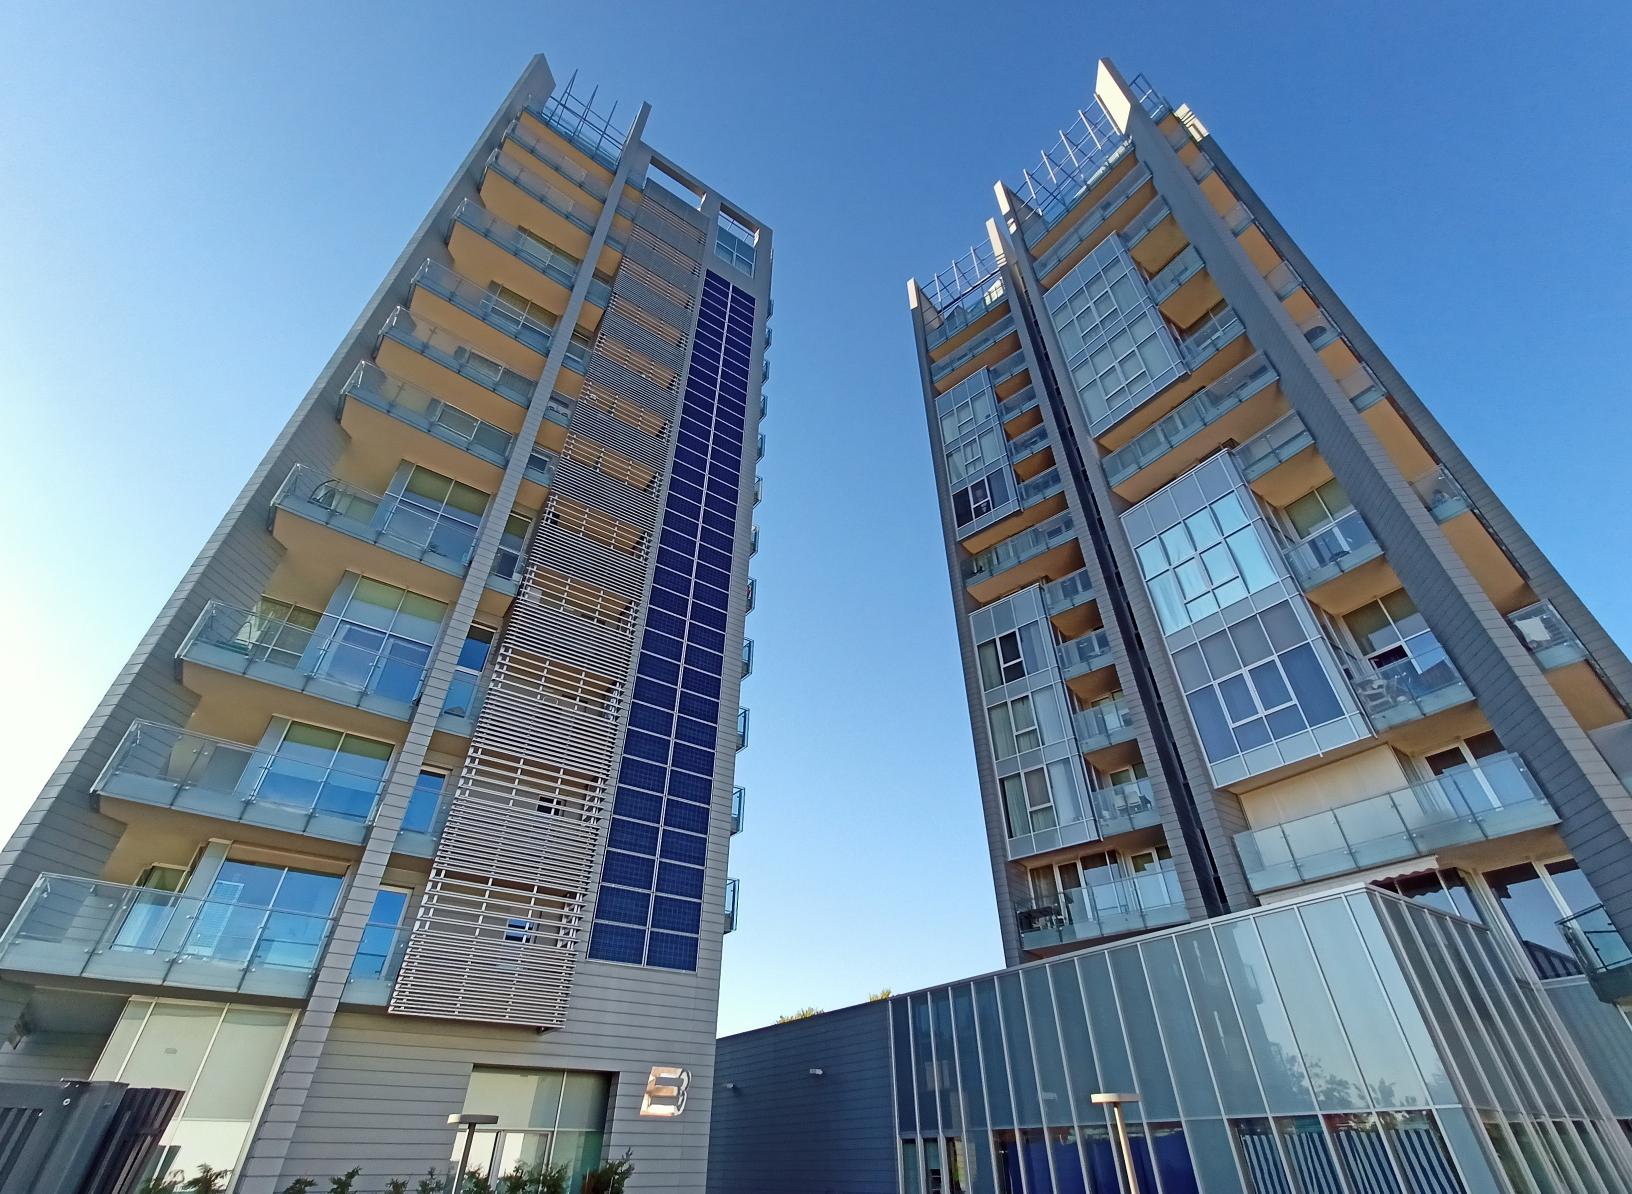 supercondomini TAT, due grattacieli grigio-azzurri con pannelli solari